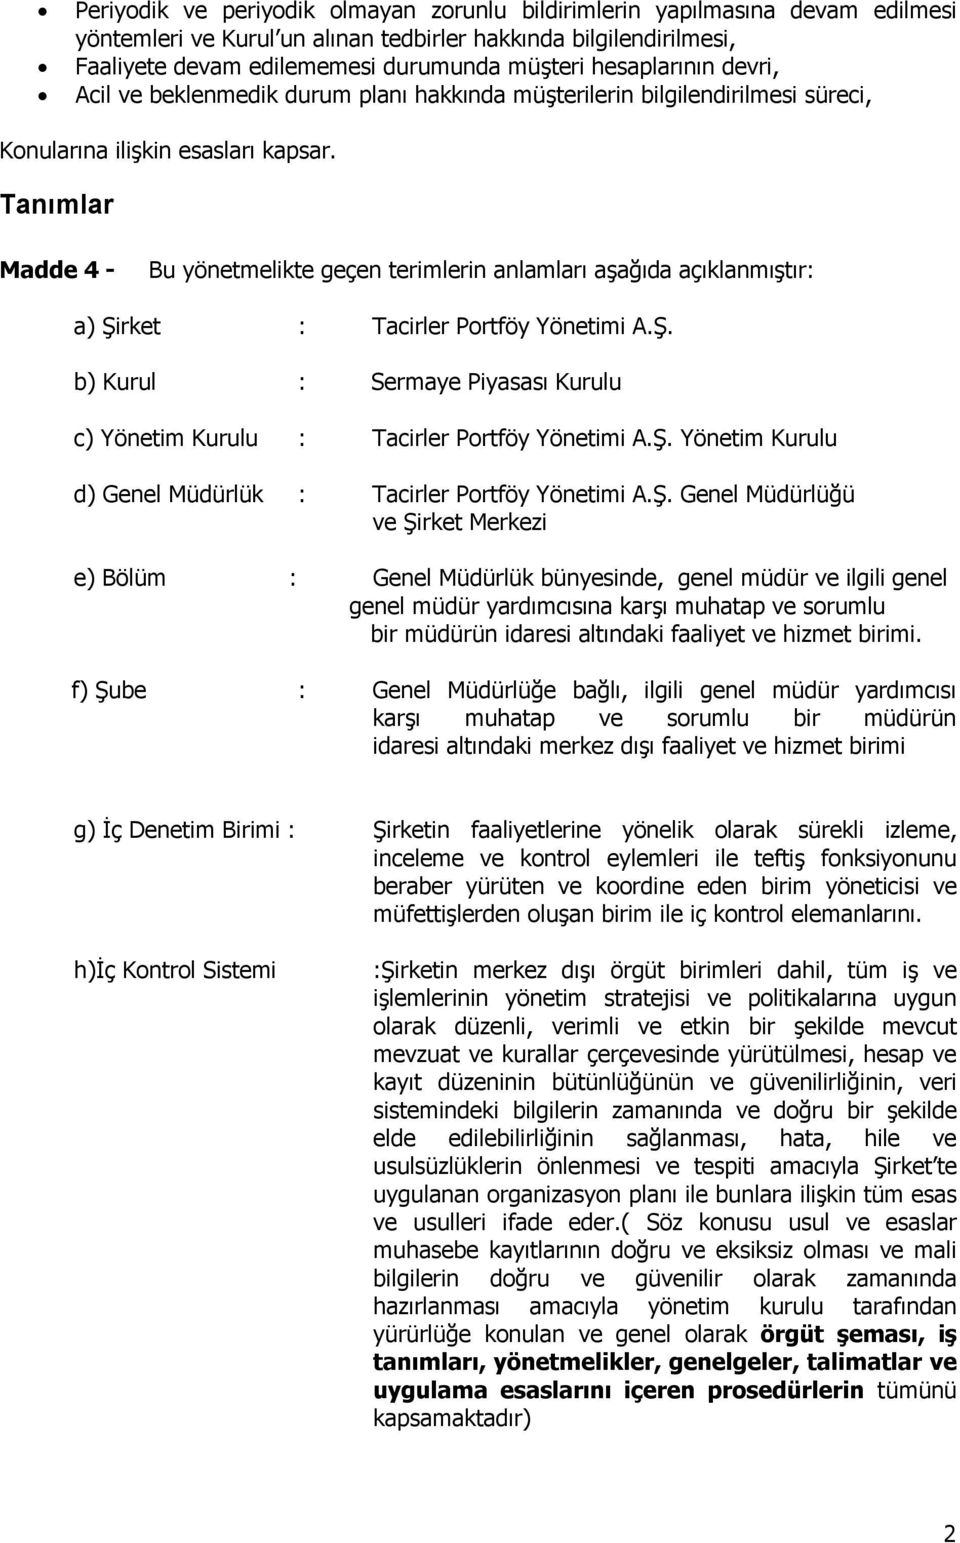 Tanımlar Madde 4 - Bu yönetmelikte geçen terimlerin anlamları aşağıda açıklanmıştır: a) Şirket : Tacirler Portföy Yönetimi A.Ş. b) Kurul : Sermaye Piyasası Kurulu c) Yönetim Kurulu : Tacirler Portföy Yönetimi A.